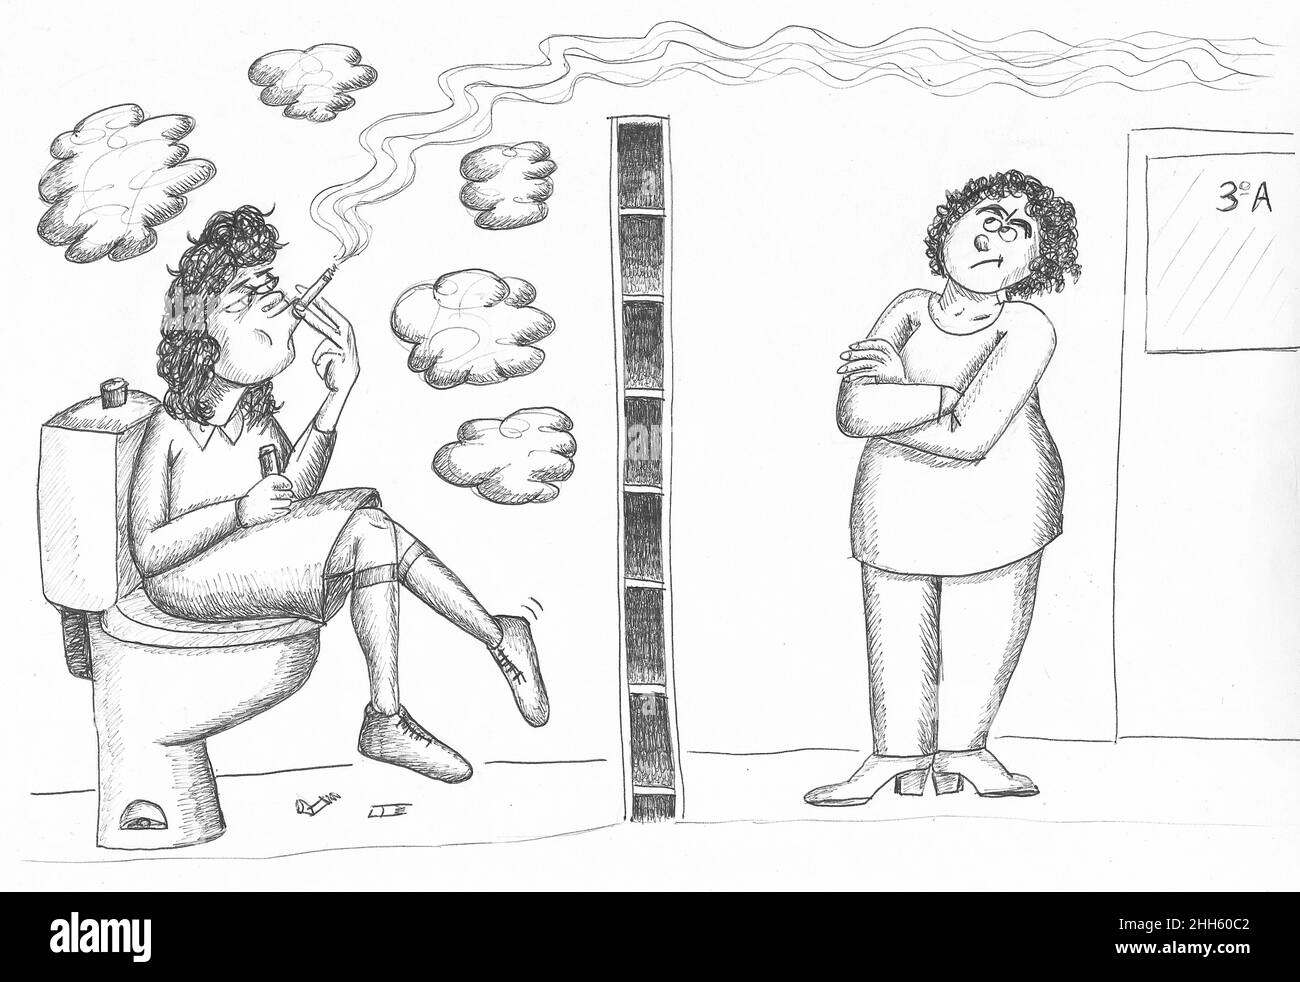 Schüler raucht in der Toilette und Lehrer schaut auf den Rauch. Abbildung. Stockfoto